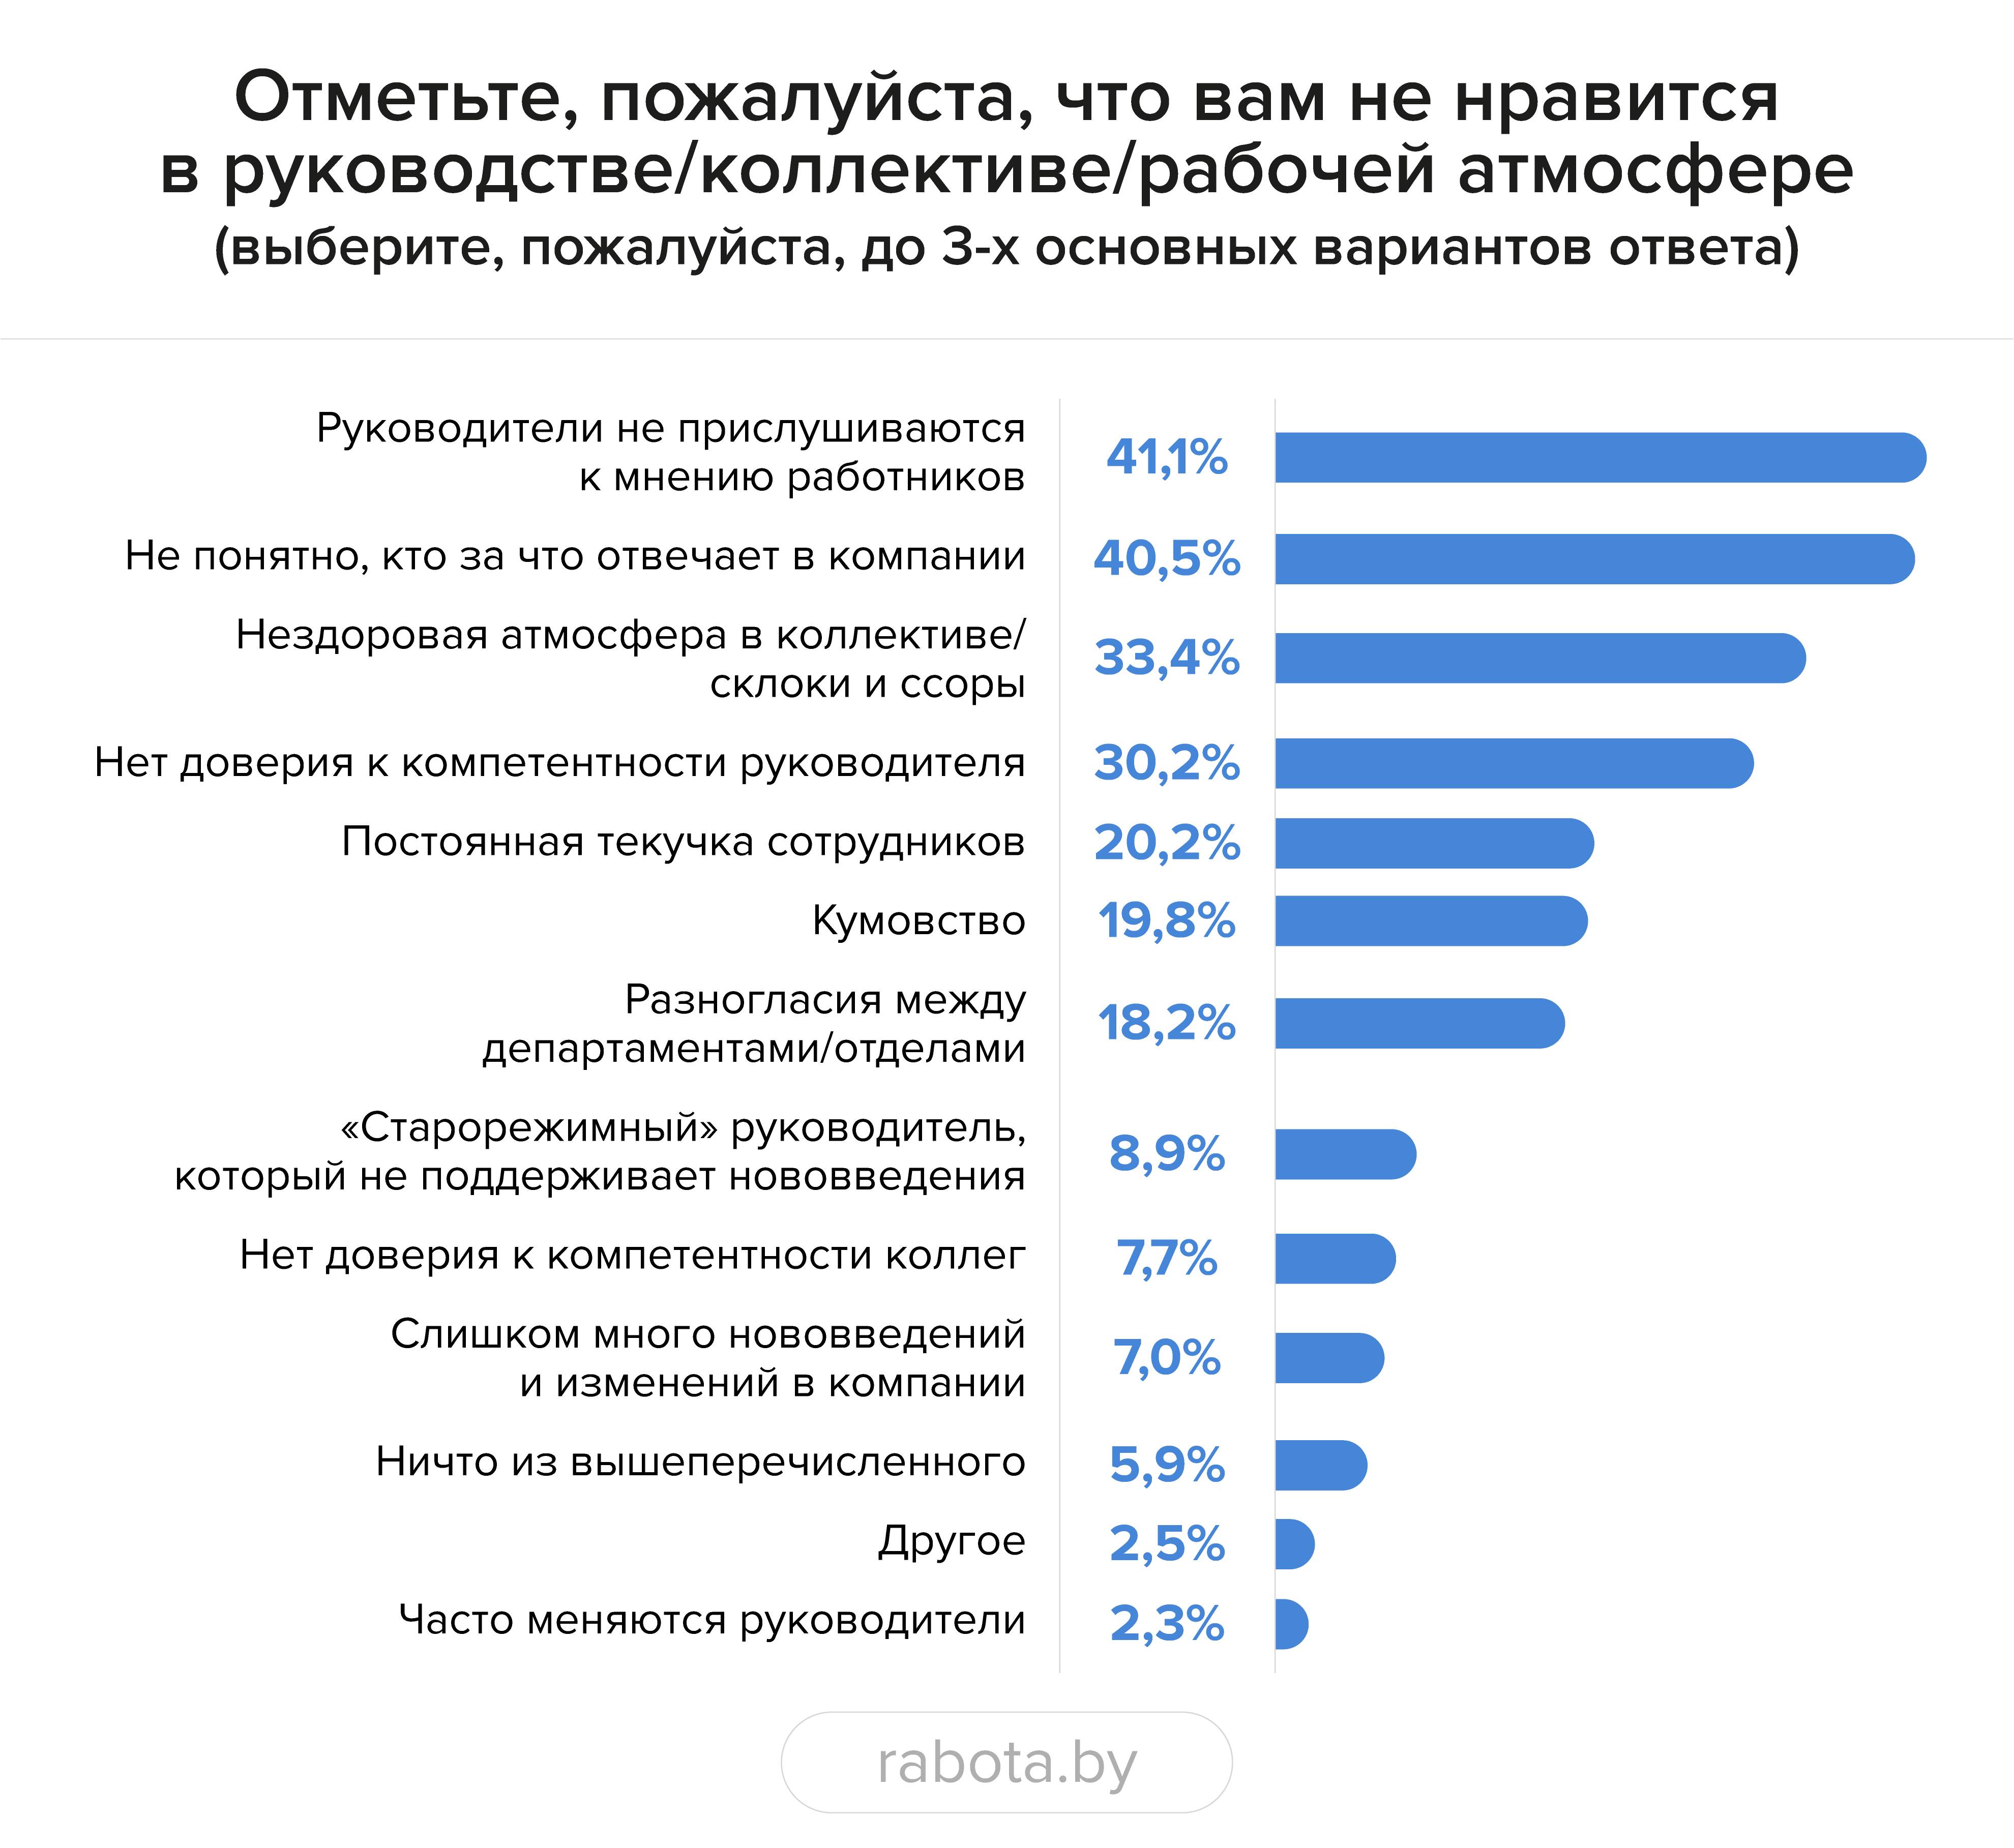 Почти каждый третий белорус хочет в ближайшее время сменить работу